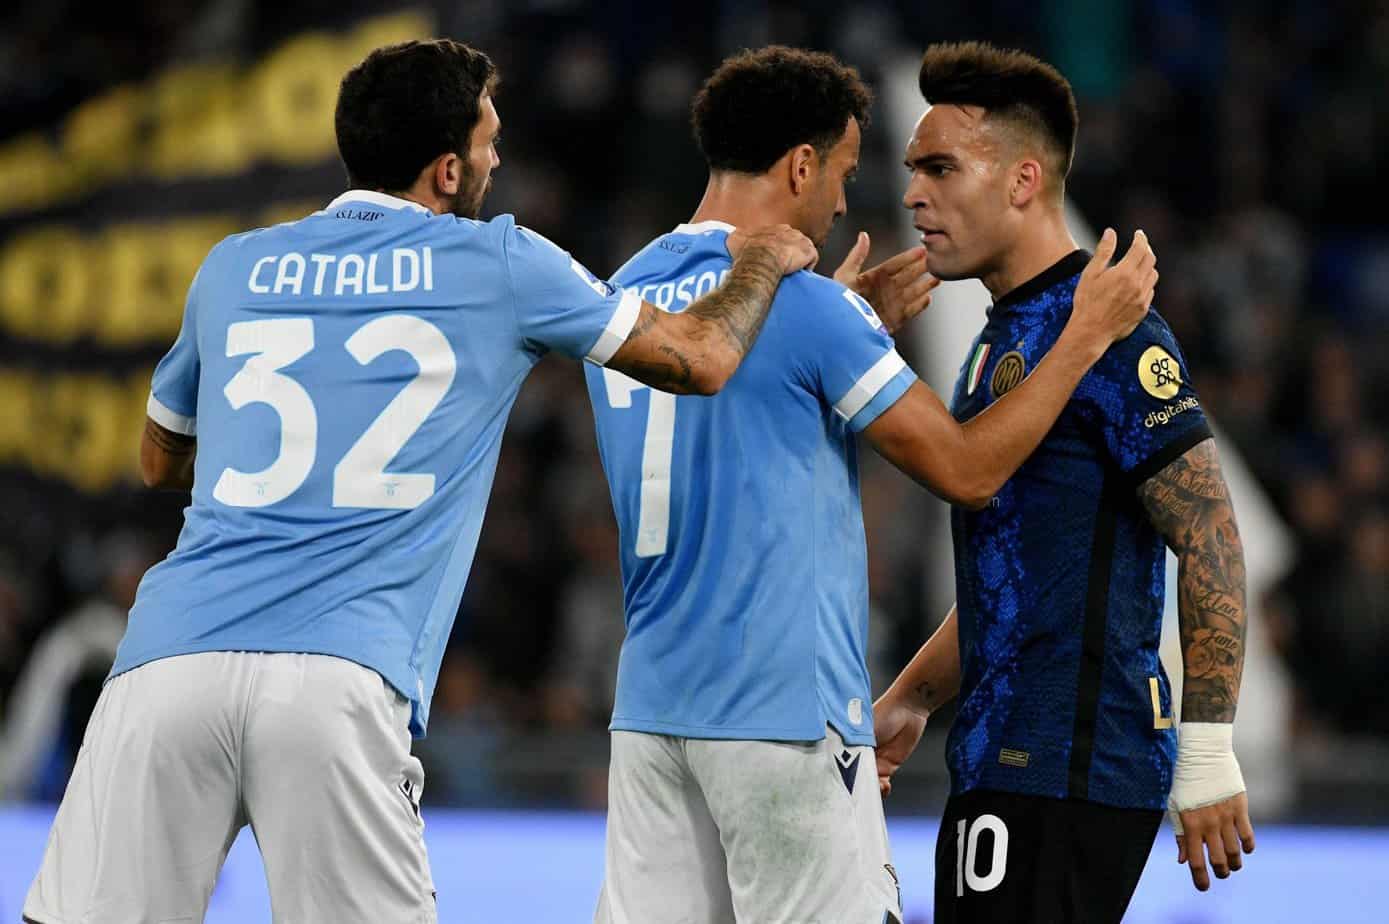 Cuotas de Apuestas para Lazio vs Inter y Pronóstico Gratuito